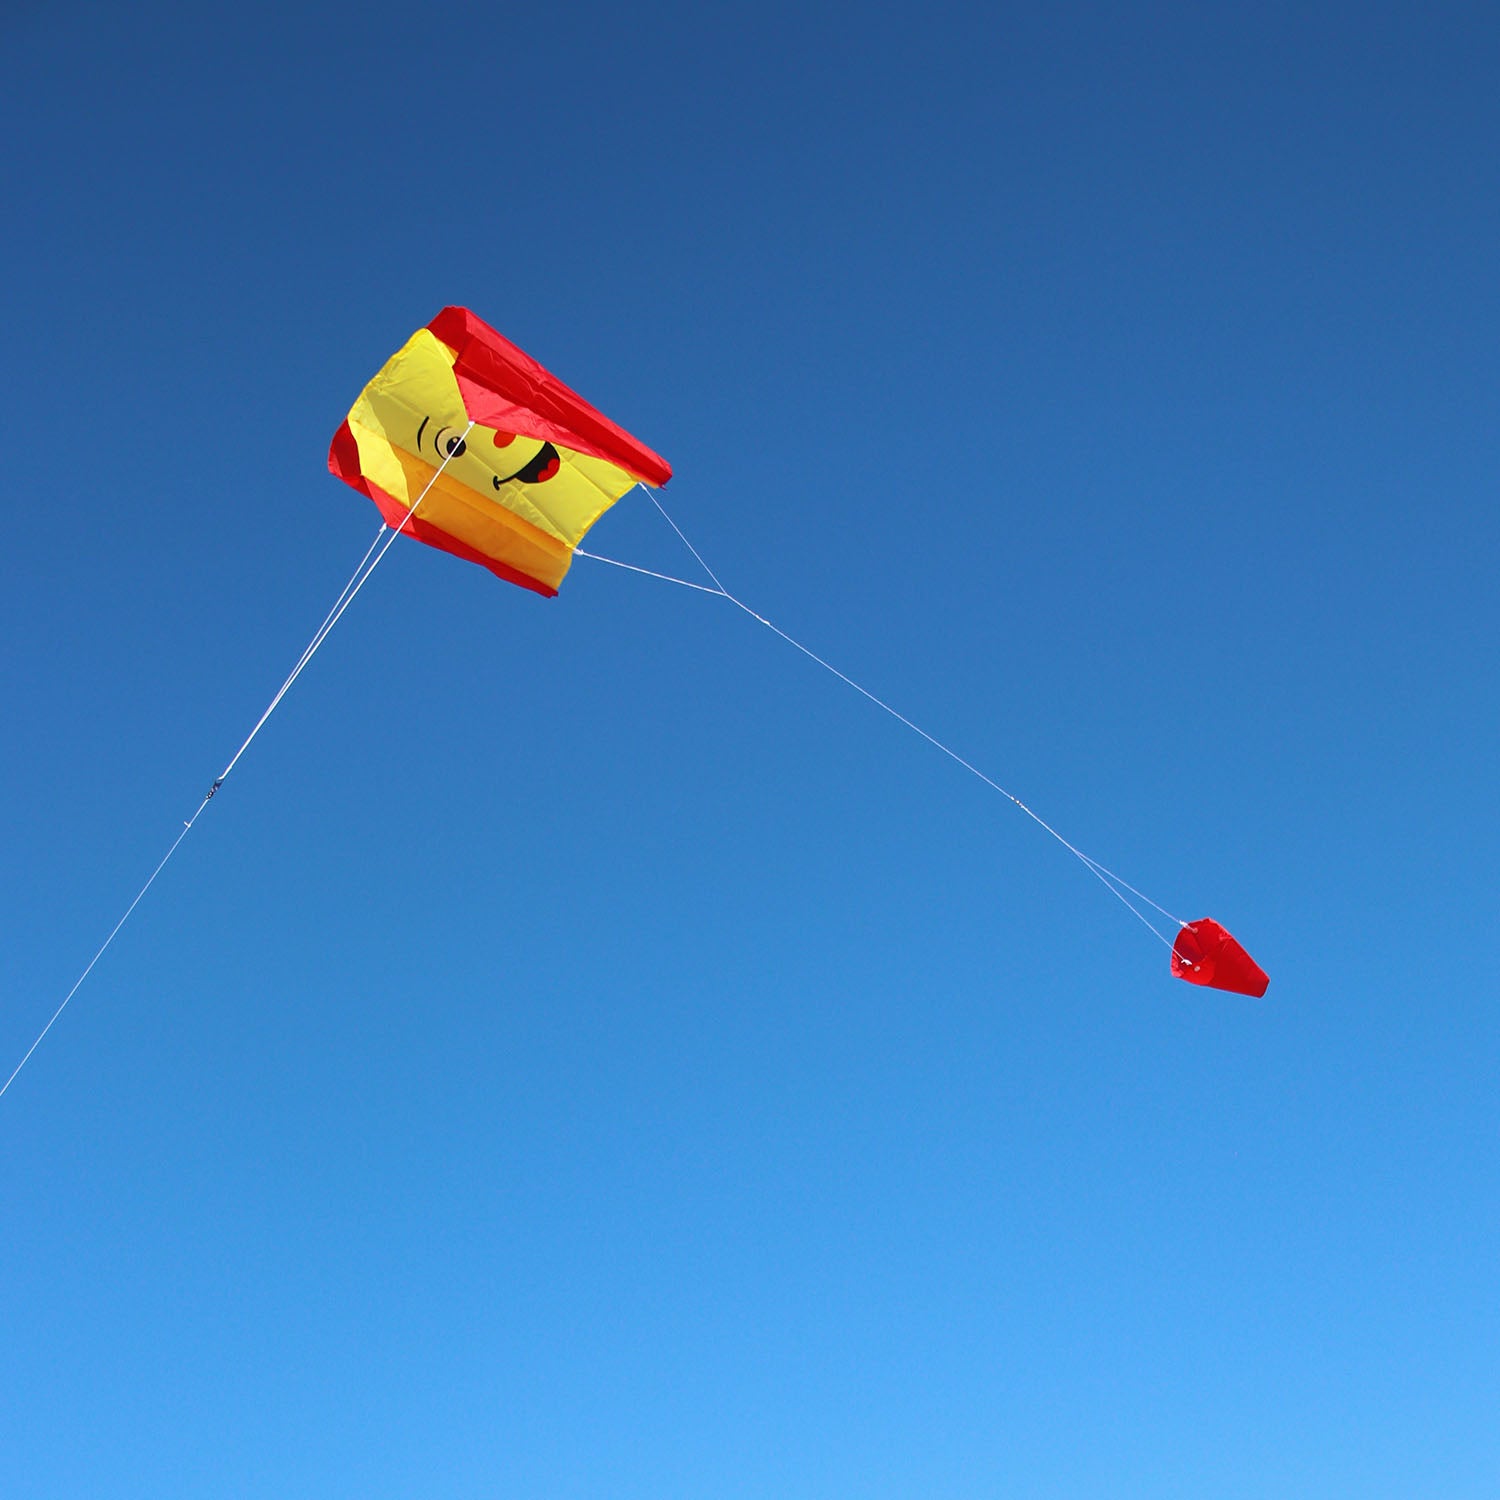 Wolkensturmer Single Line Sled Kite - Smile